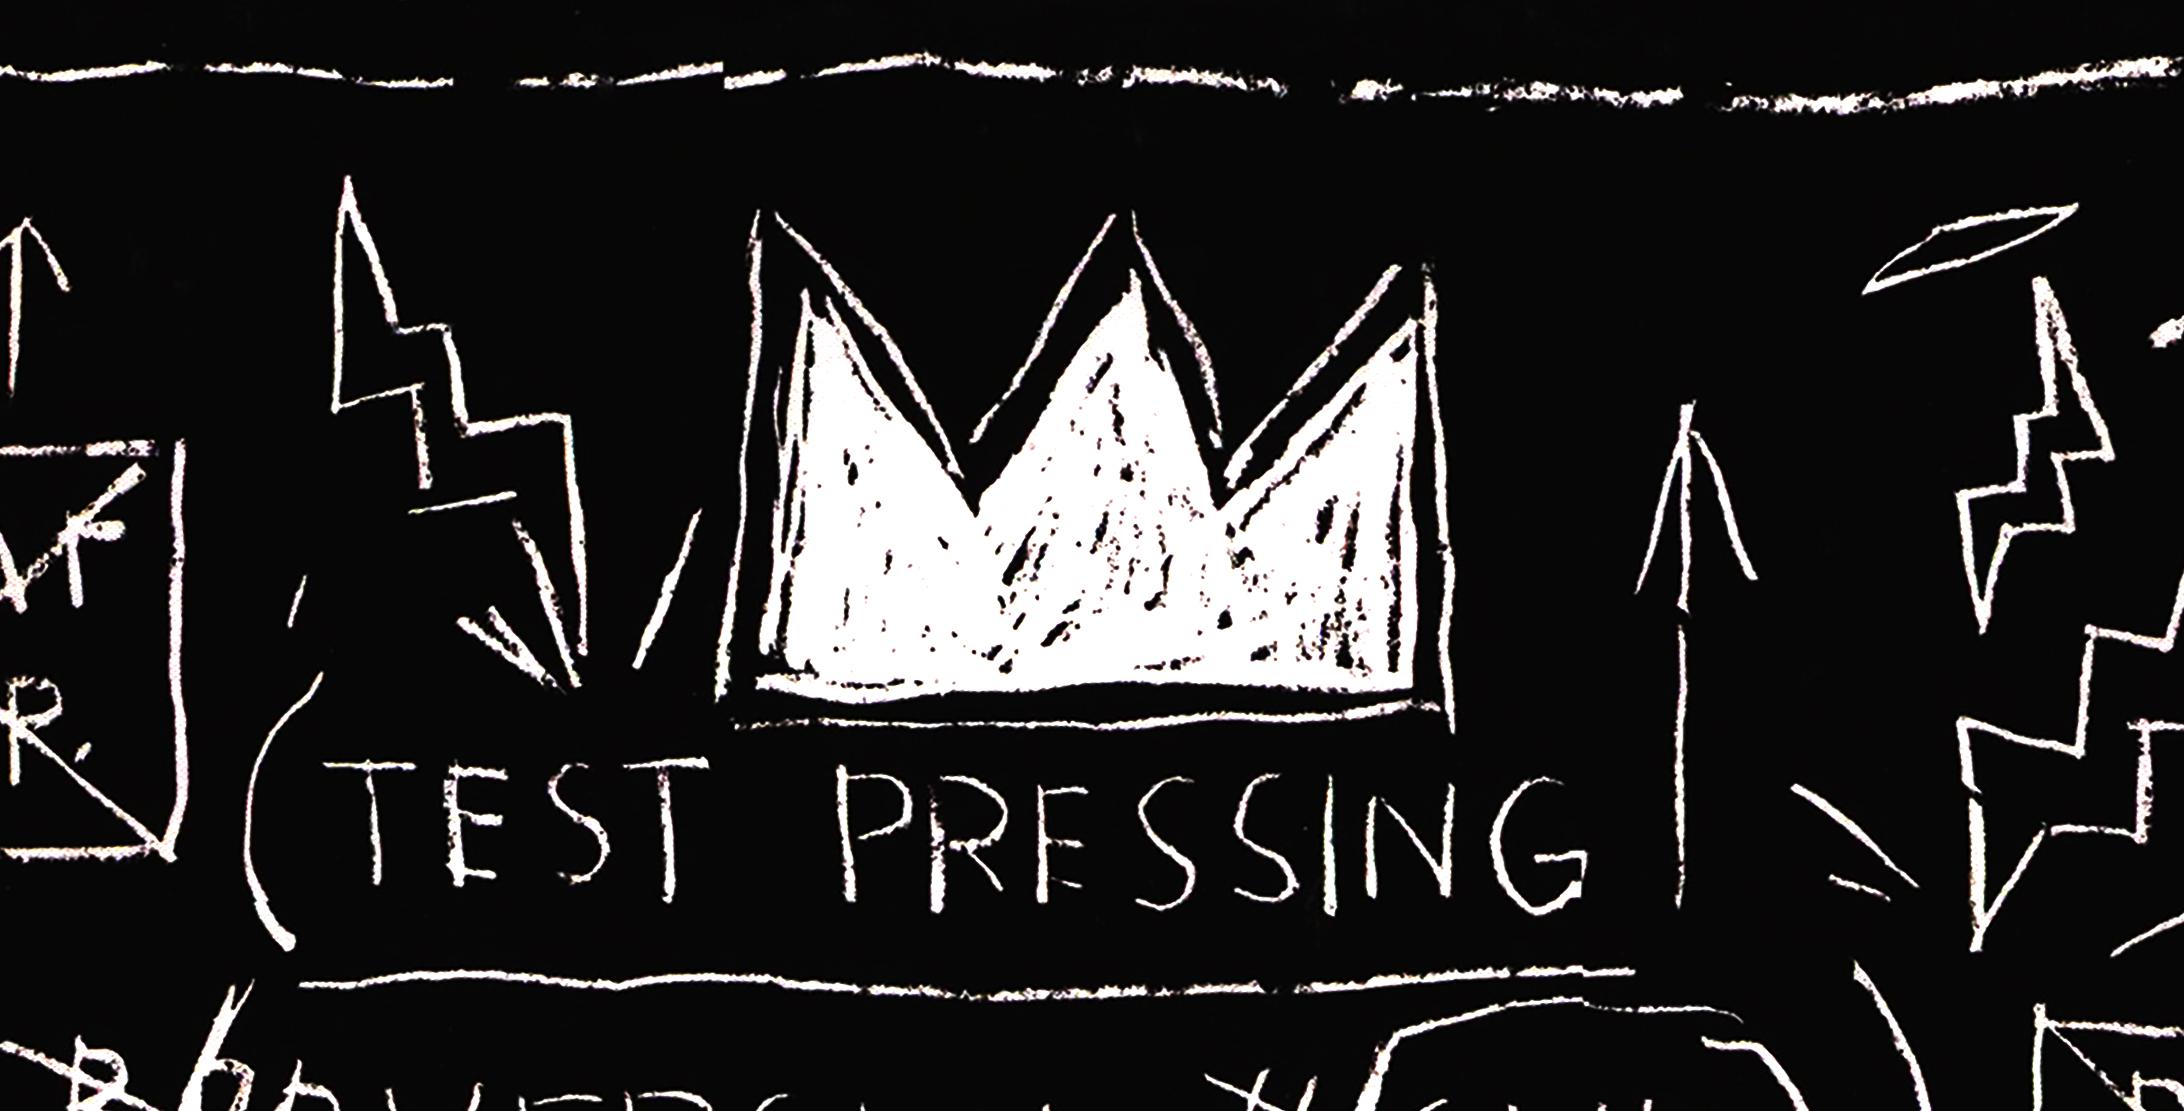 Basquiat Record Art 1983/2001:
2001 erschien die 2. Pressung in limitierter Auflage.  Beat-Bop ist ein 10-minütiges Stück, in dem verschiedene Instrumente und Reimschemata synthetisiert werden und für das Basquiat 1983 das Original-Artwork entwarf. 